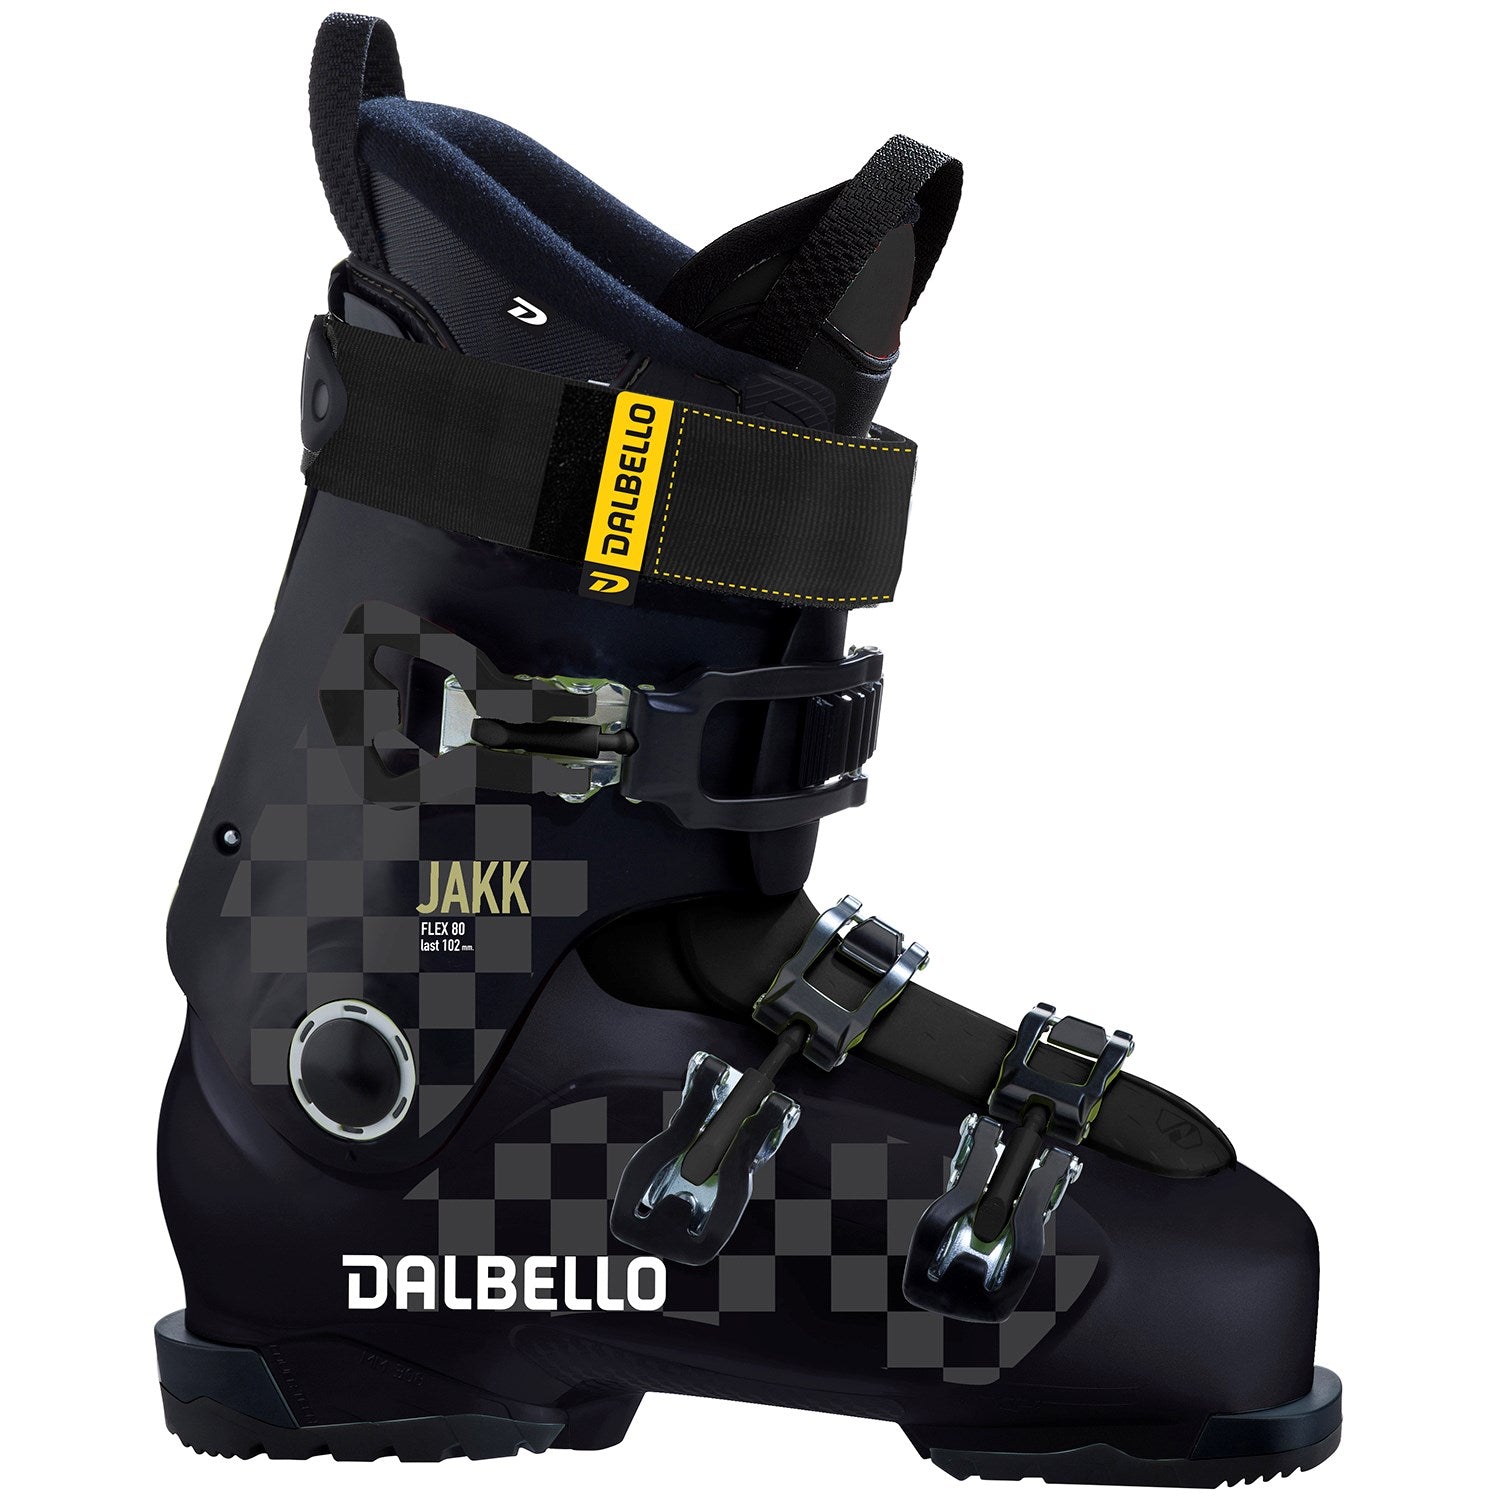 2022 Dalbello Jakk Ski Boots